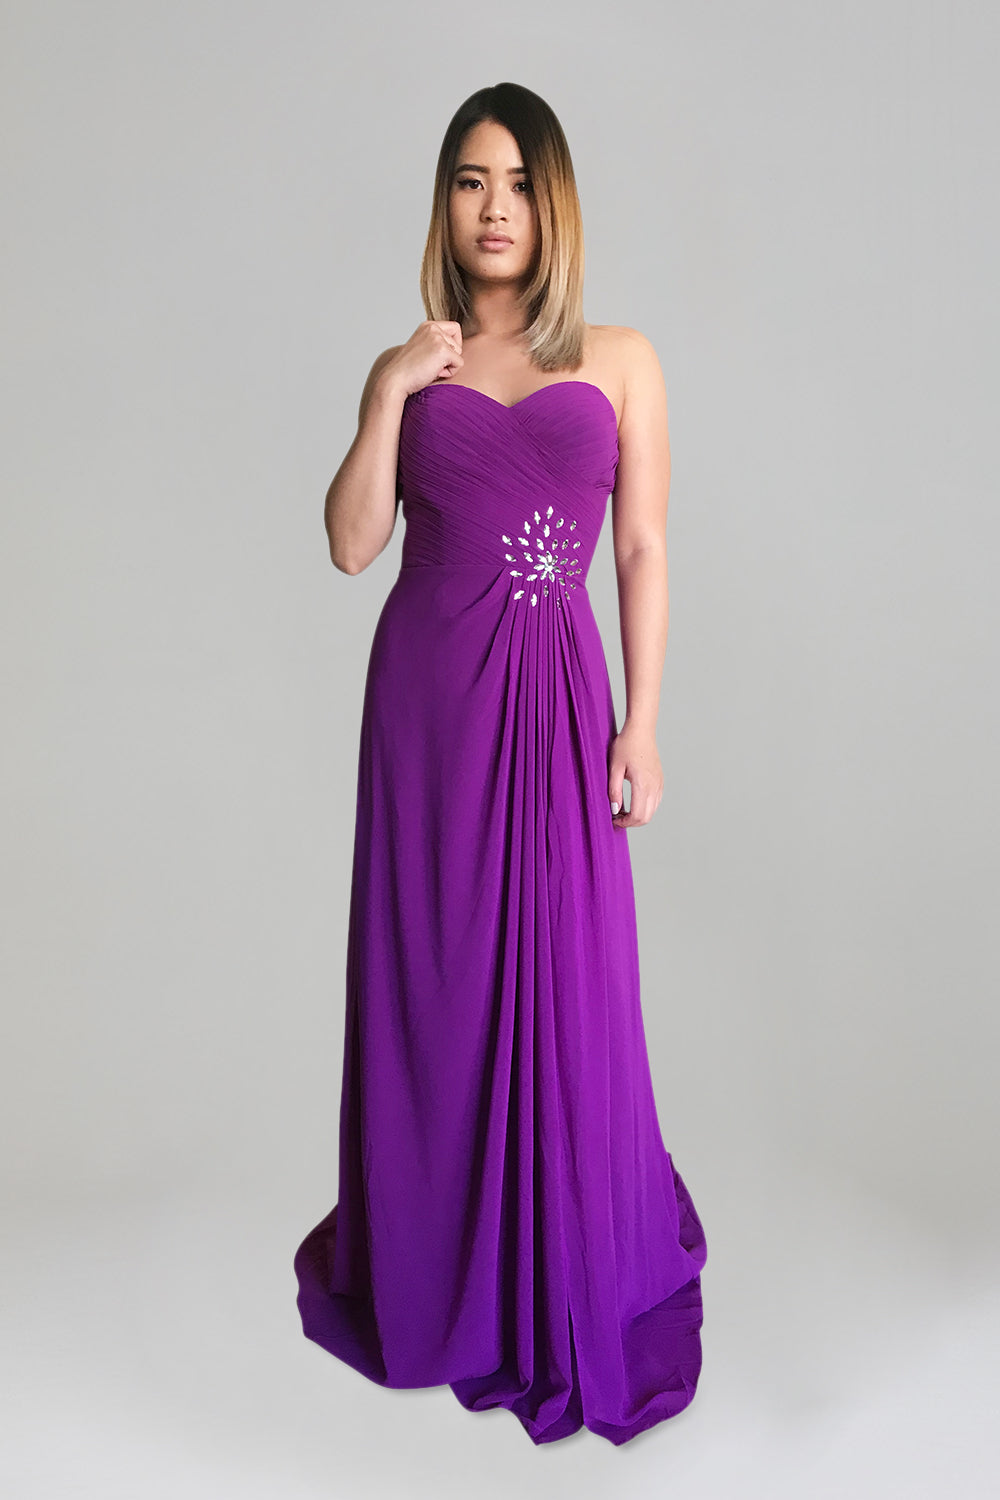 custom made purple chiffon bridesmaid dresses perth australia envious bridal & formal